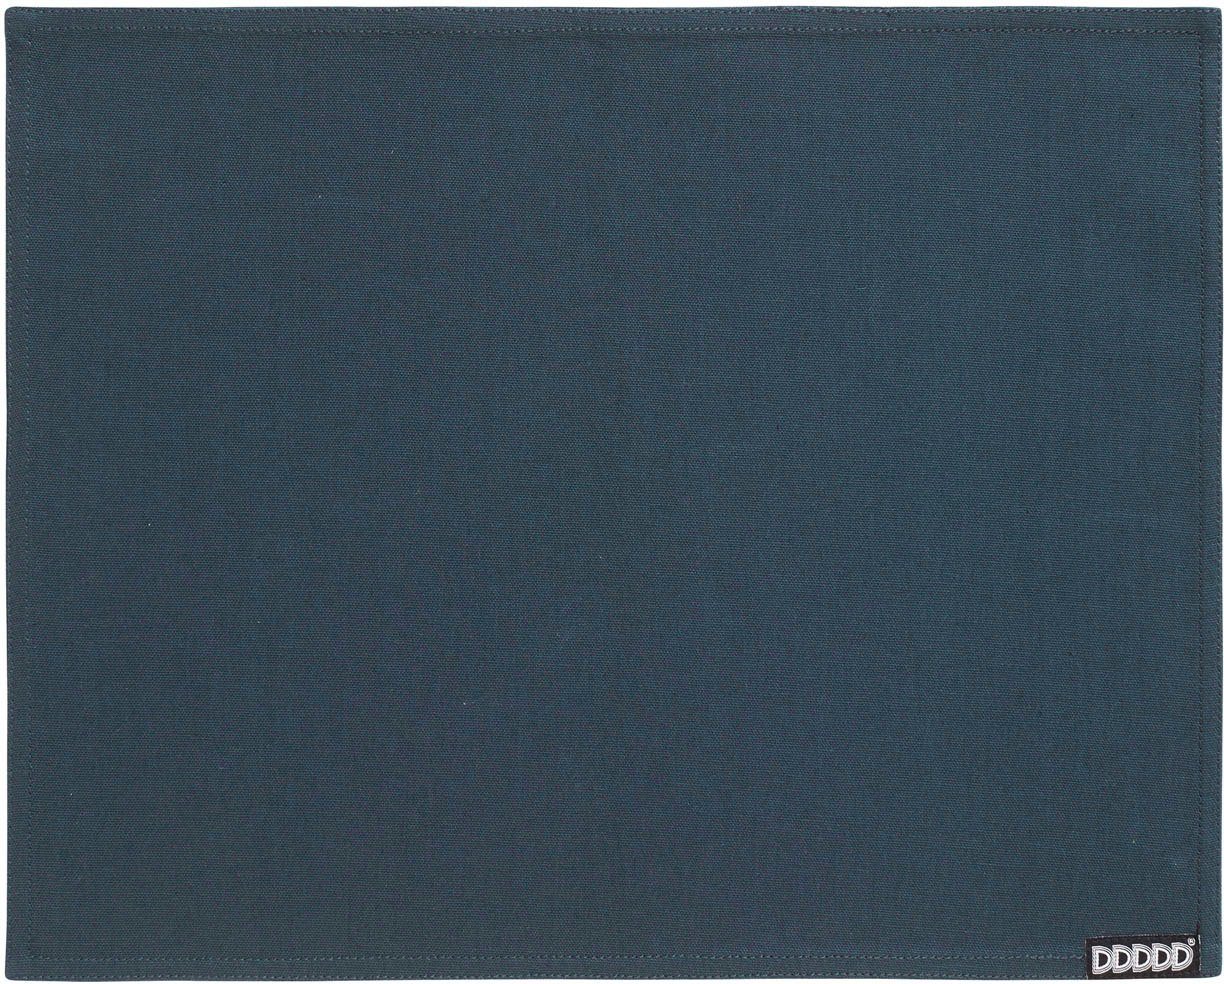 Platzset, Kit, DDDDD, (Set, 2-St), Platzdecke, 35x45 cm, Baumwolle von DDDDD